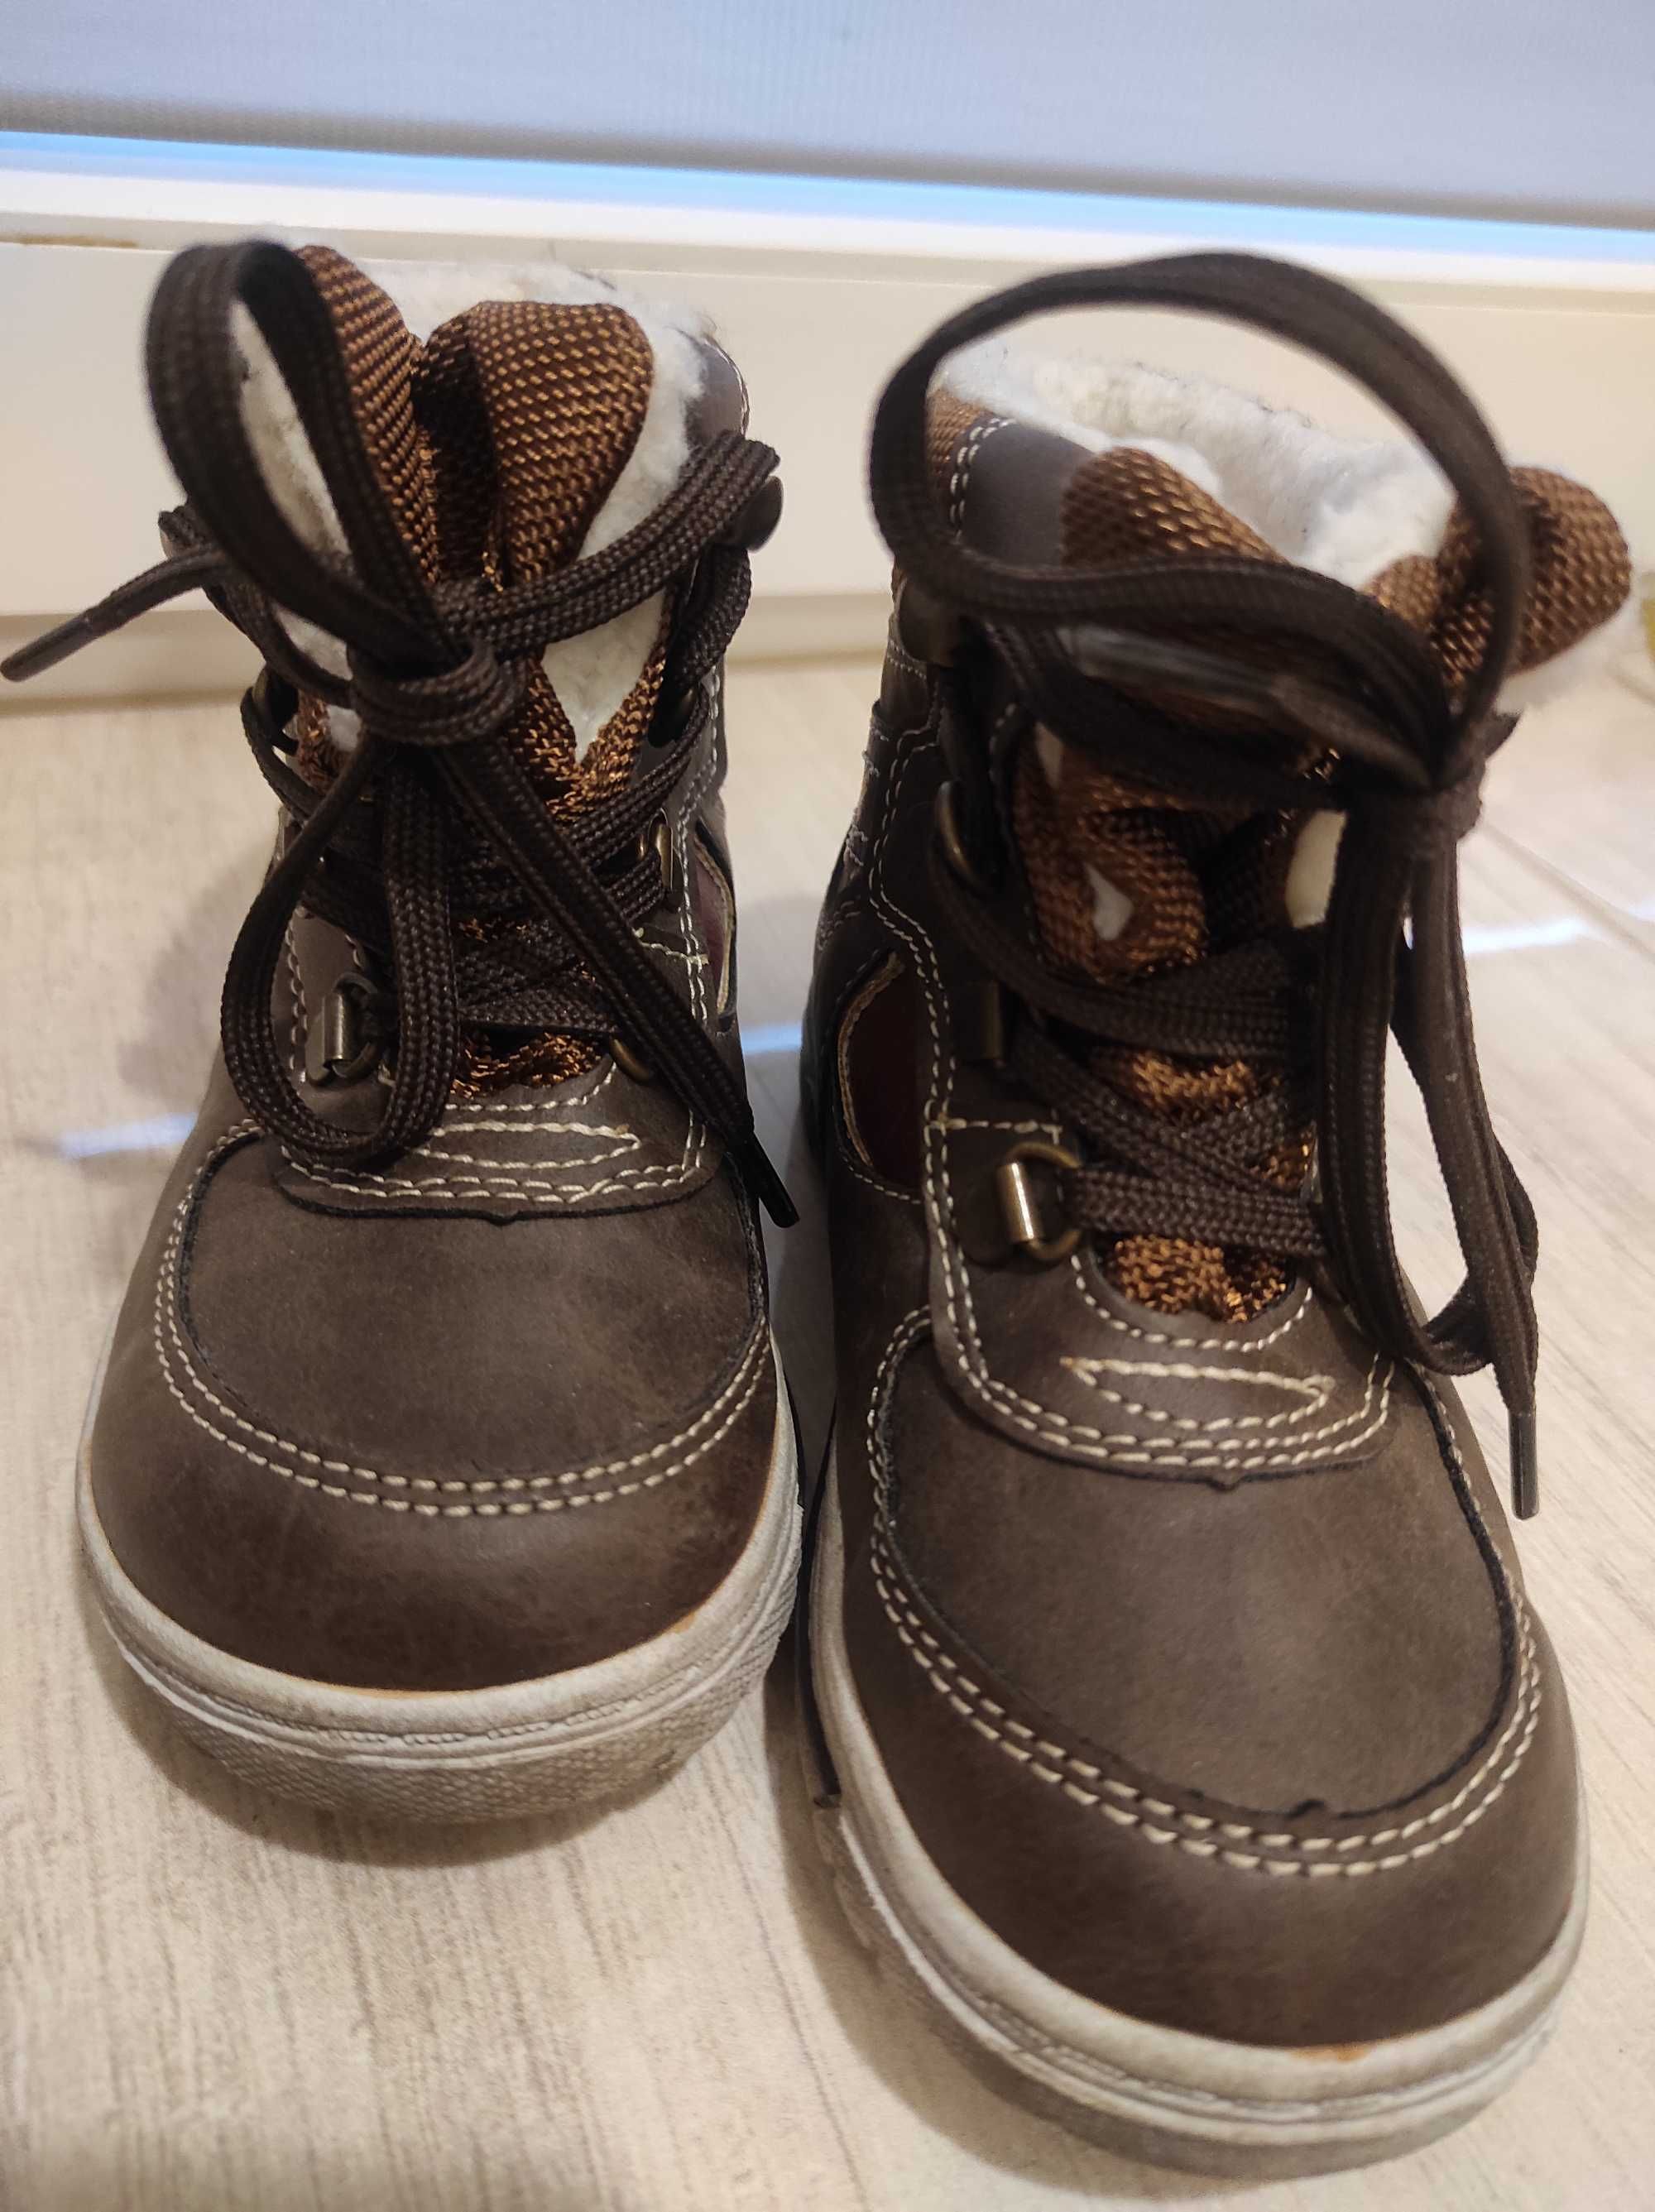 Zimowe buty r 24, dl wkładki 15,5 cm